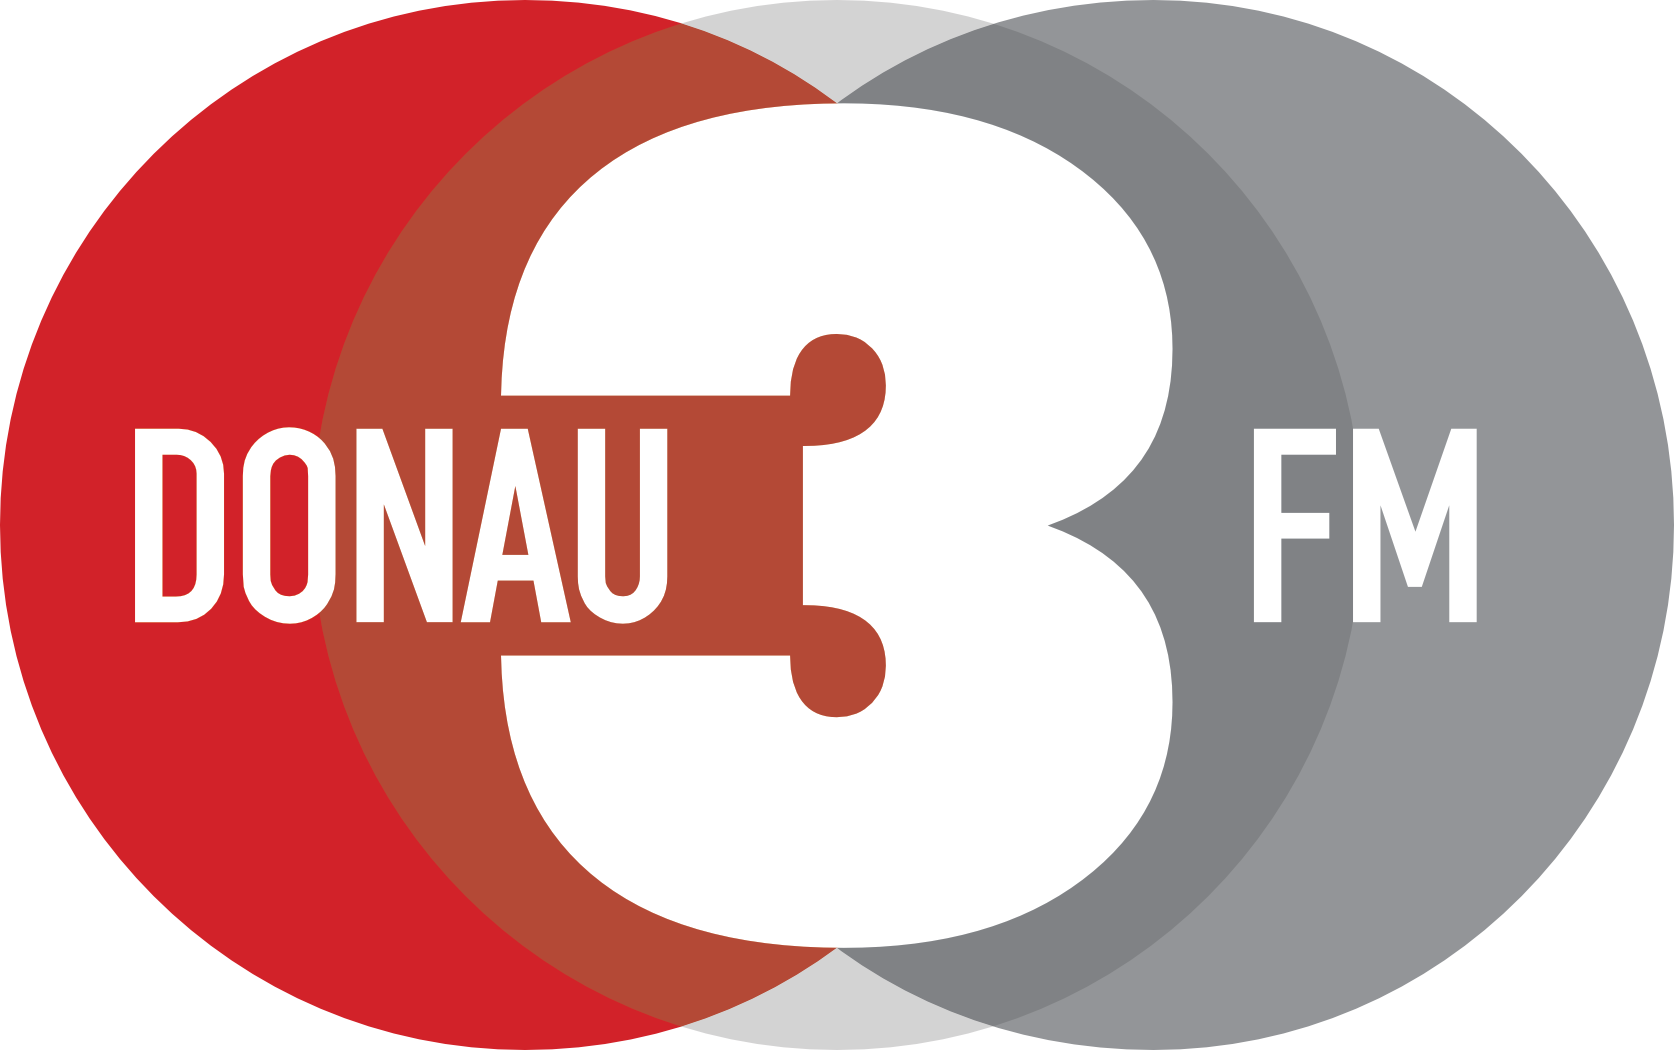 DONAU3FM